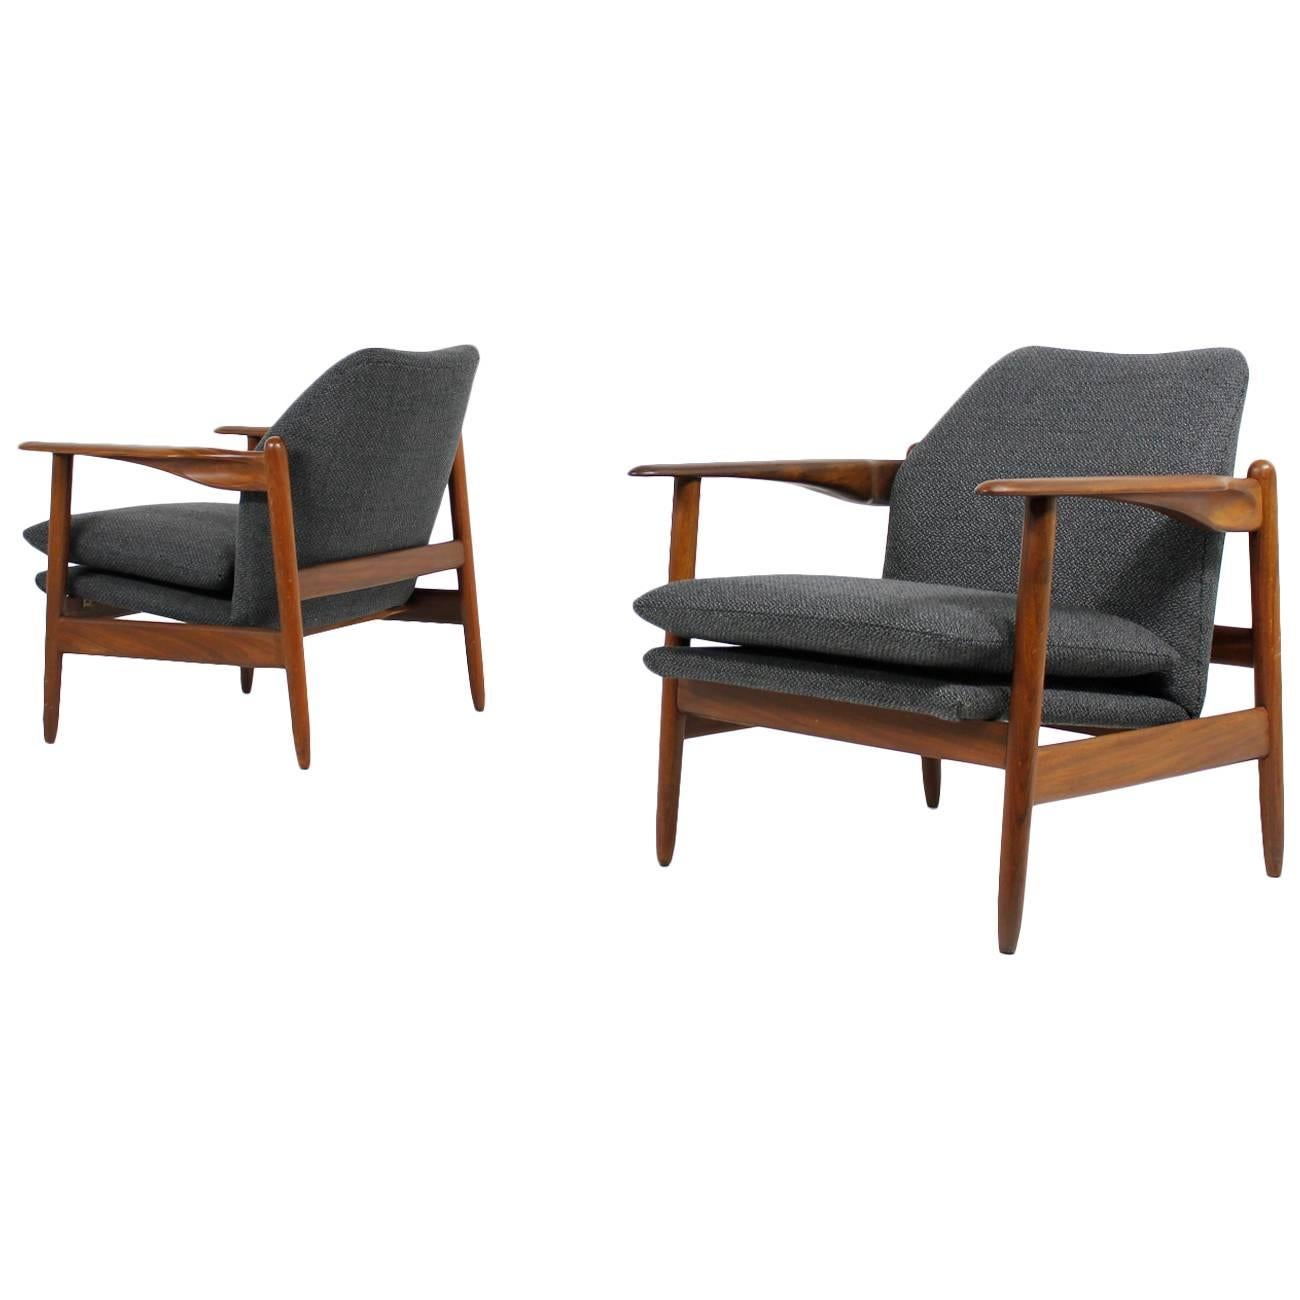 Amazing & Rare Pair of 1960s Organic Danish Teak Easy Chairs, Mid-Century Modern